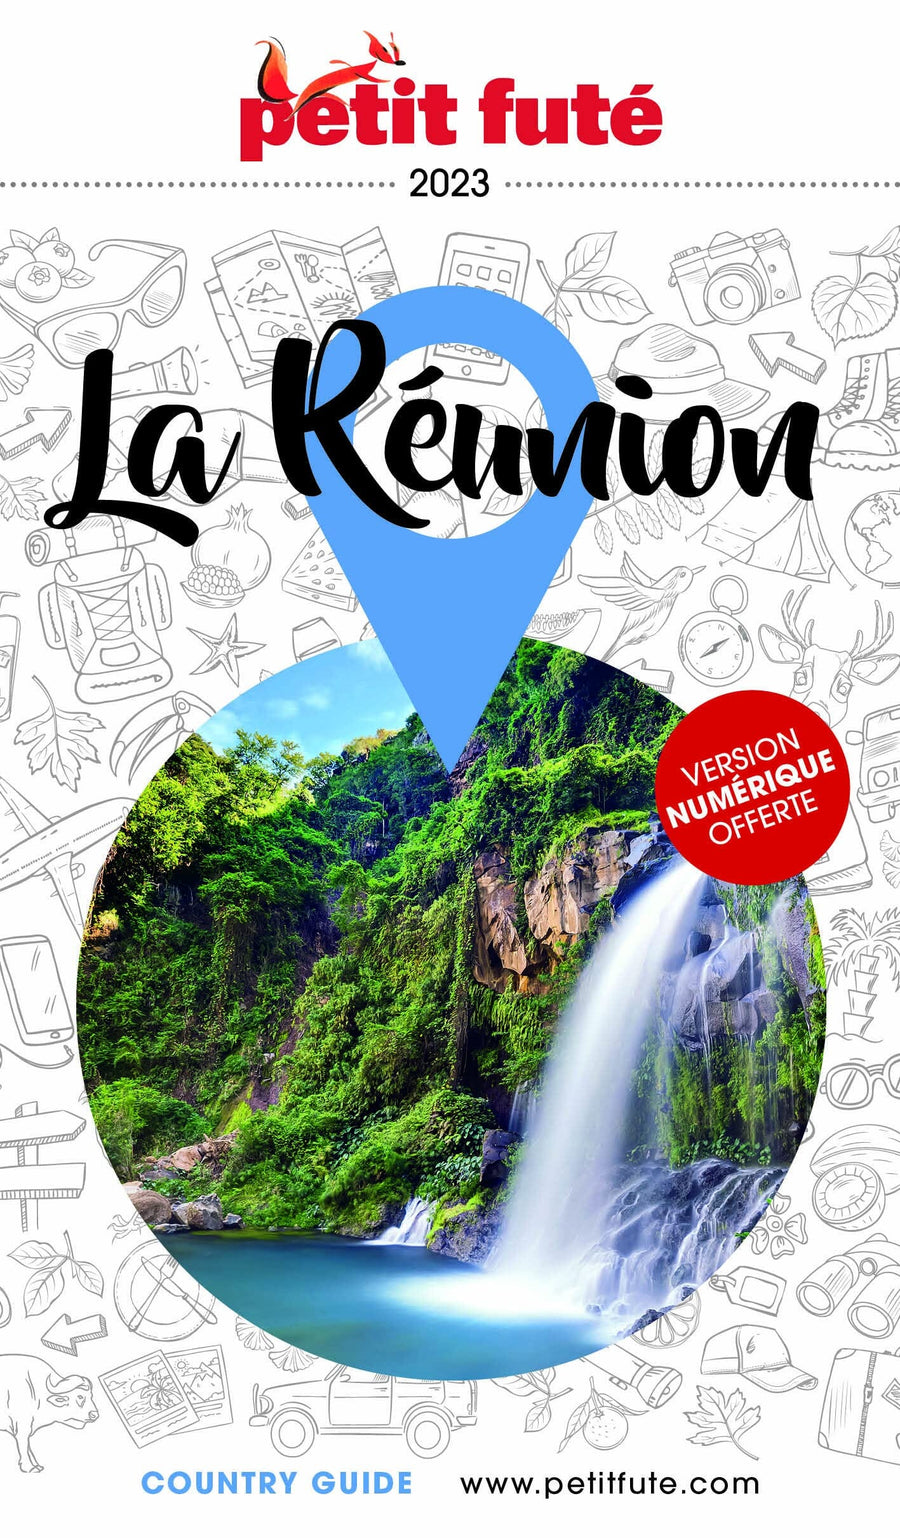 Guide de voyage - La Réunion 2023 | Petit Futé guide de voyage Petit Futé 